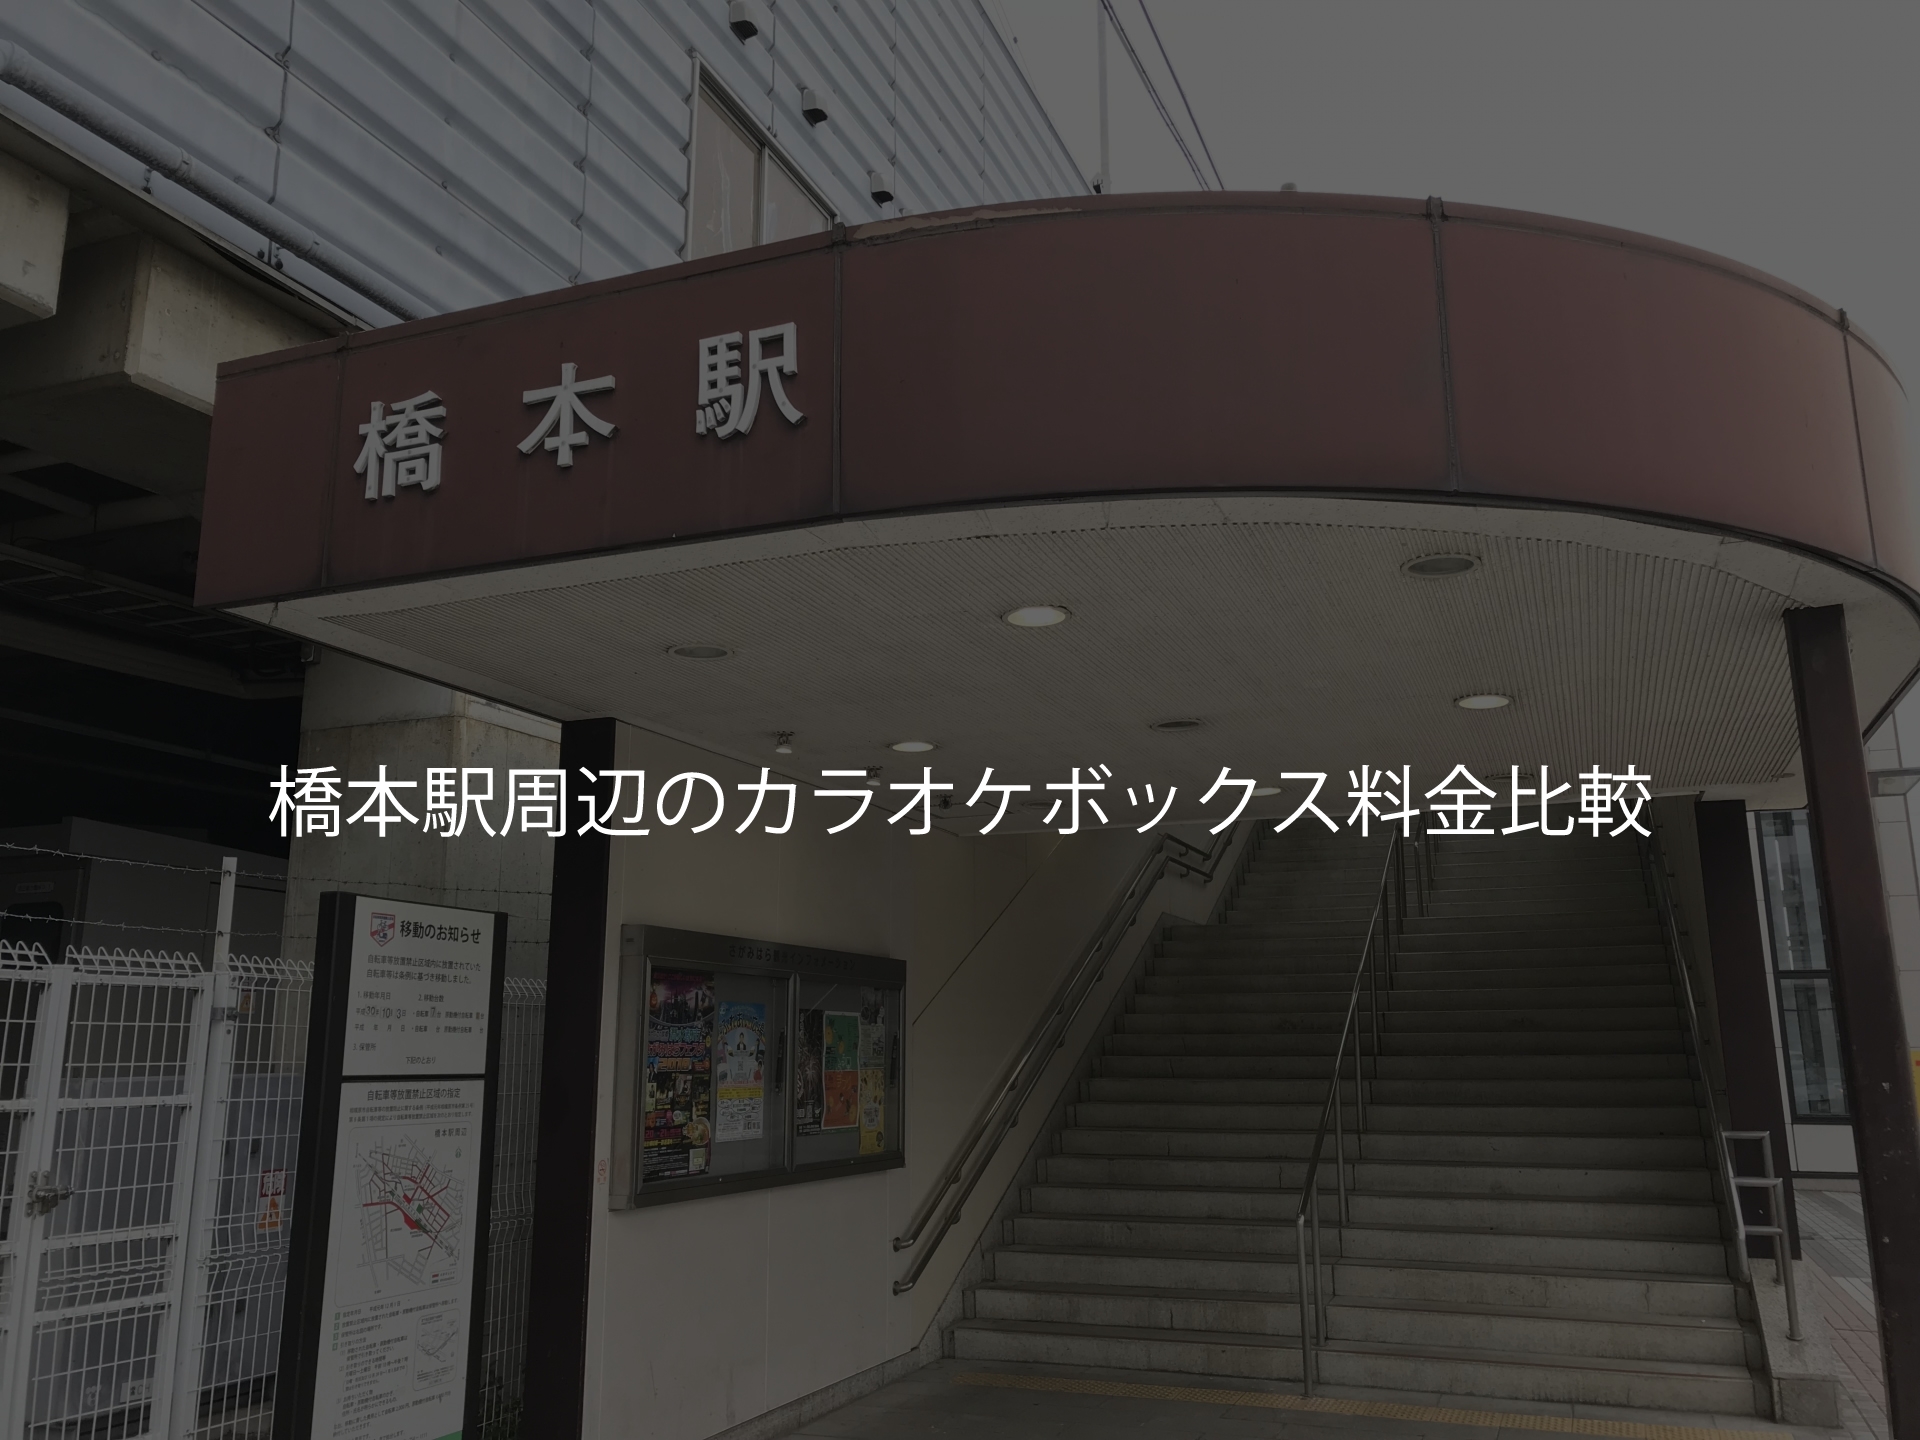 橋本駅周辺のカラオケボックス料金比較